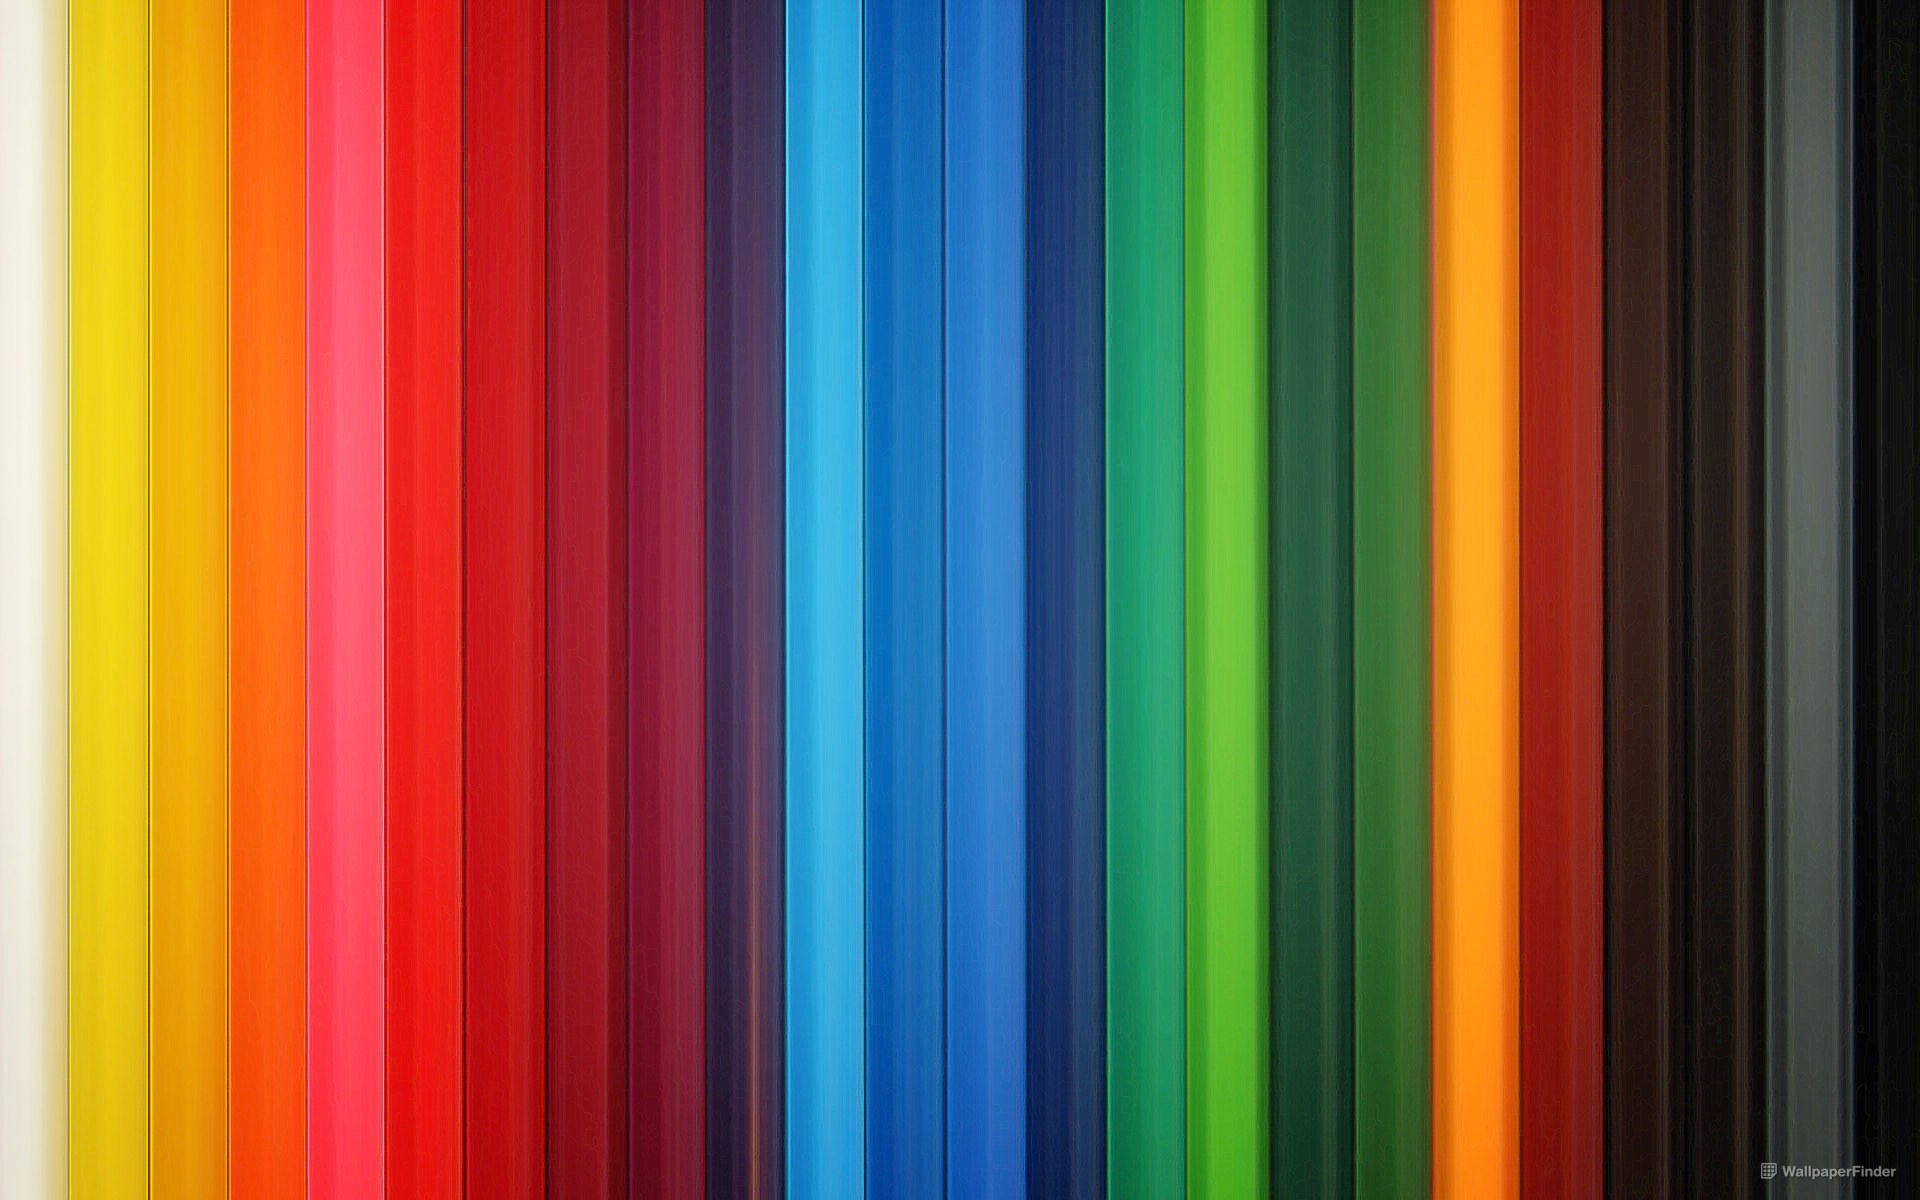 Wallpaper Loaded With Color Webdesigner Depot